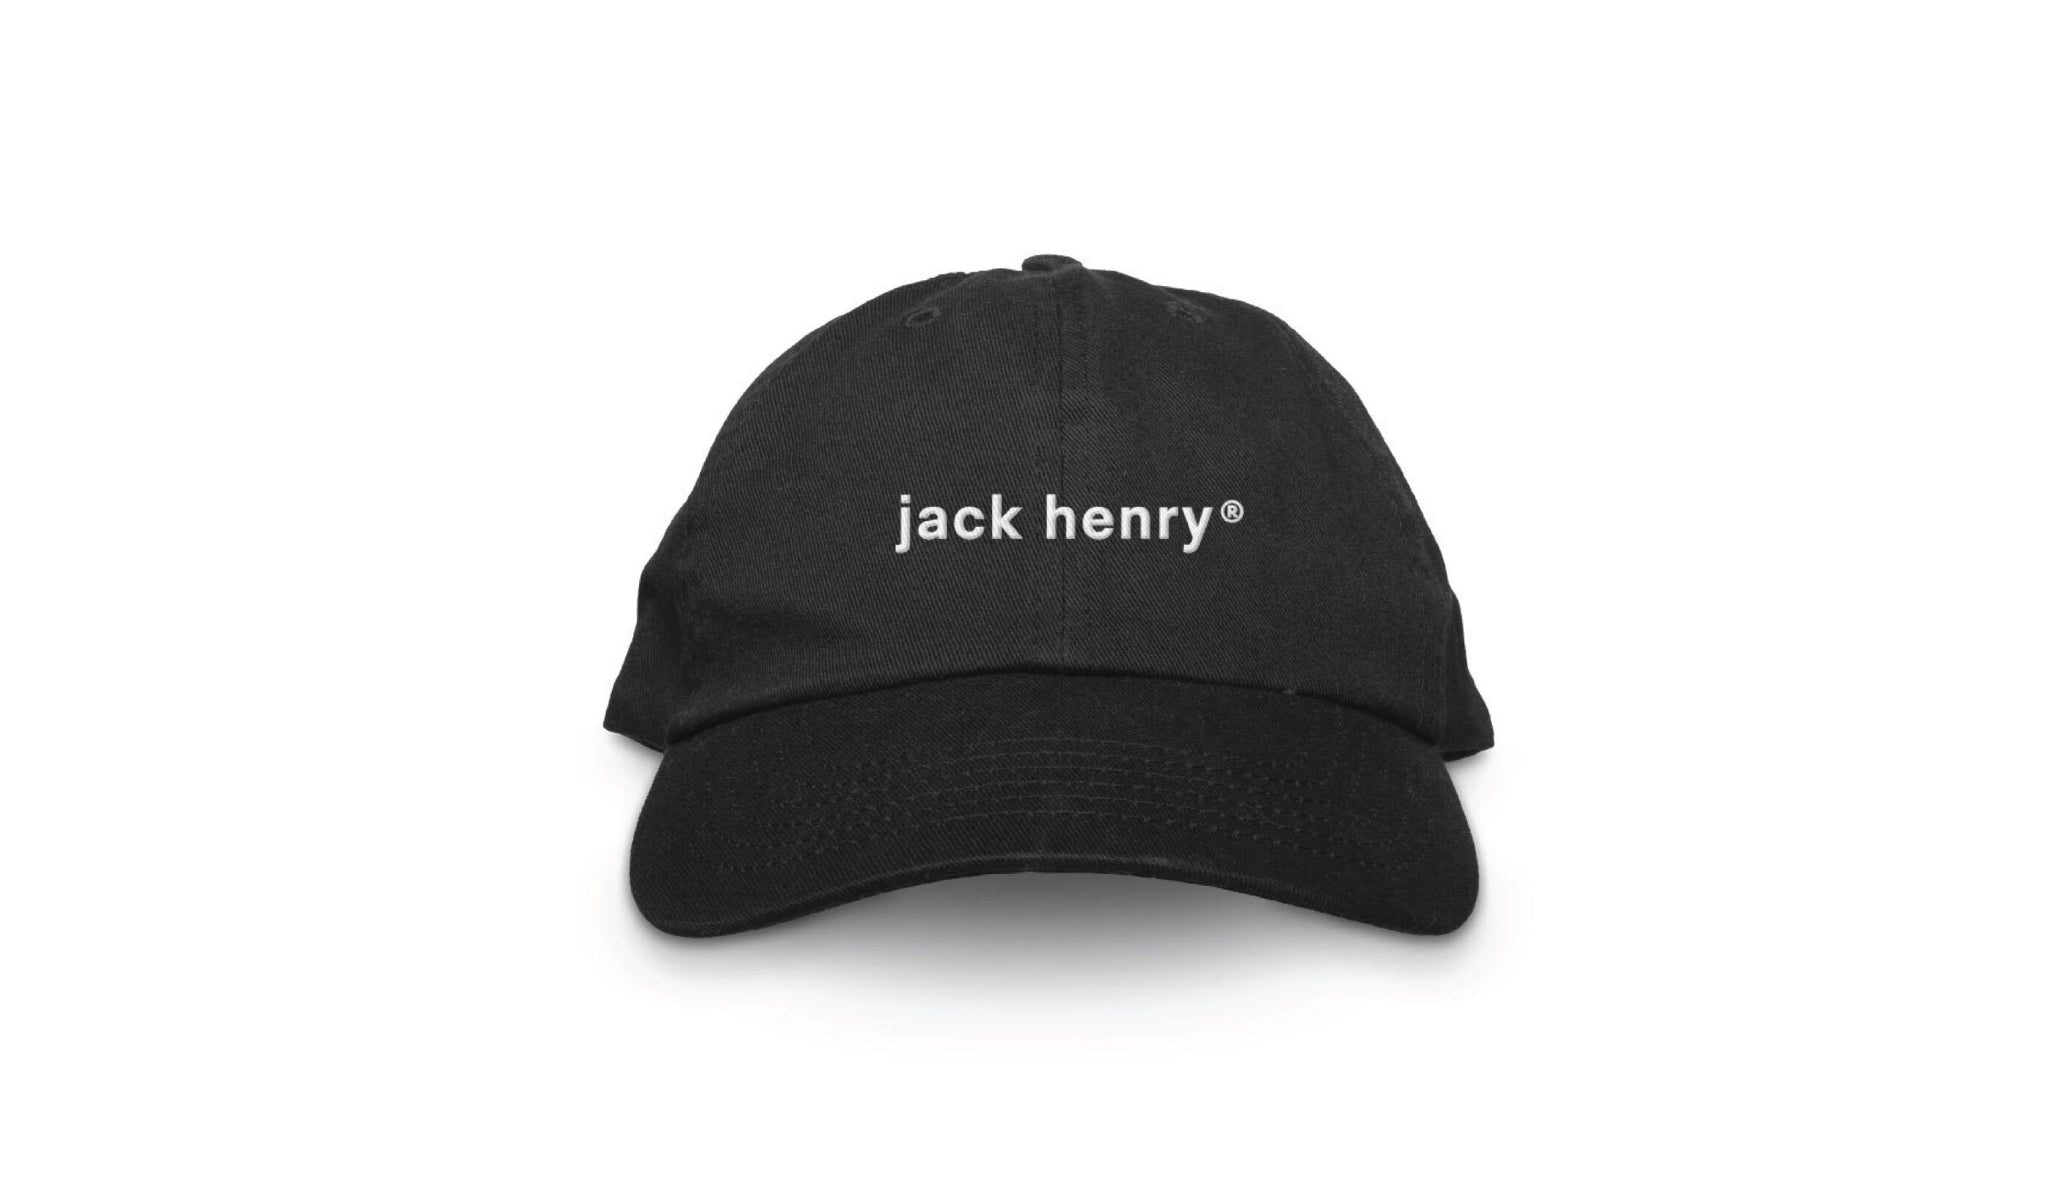 jack henry® hat